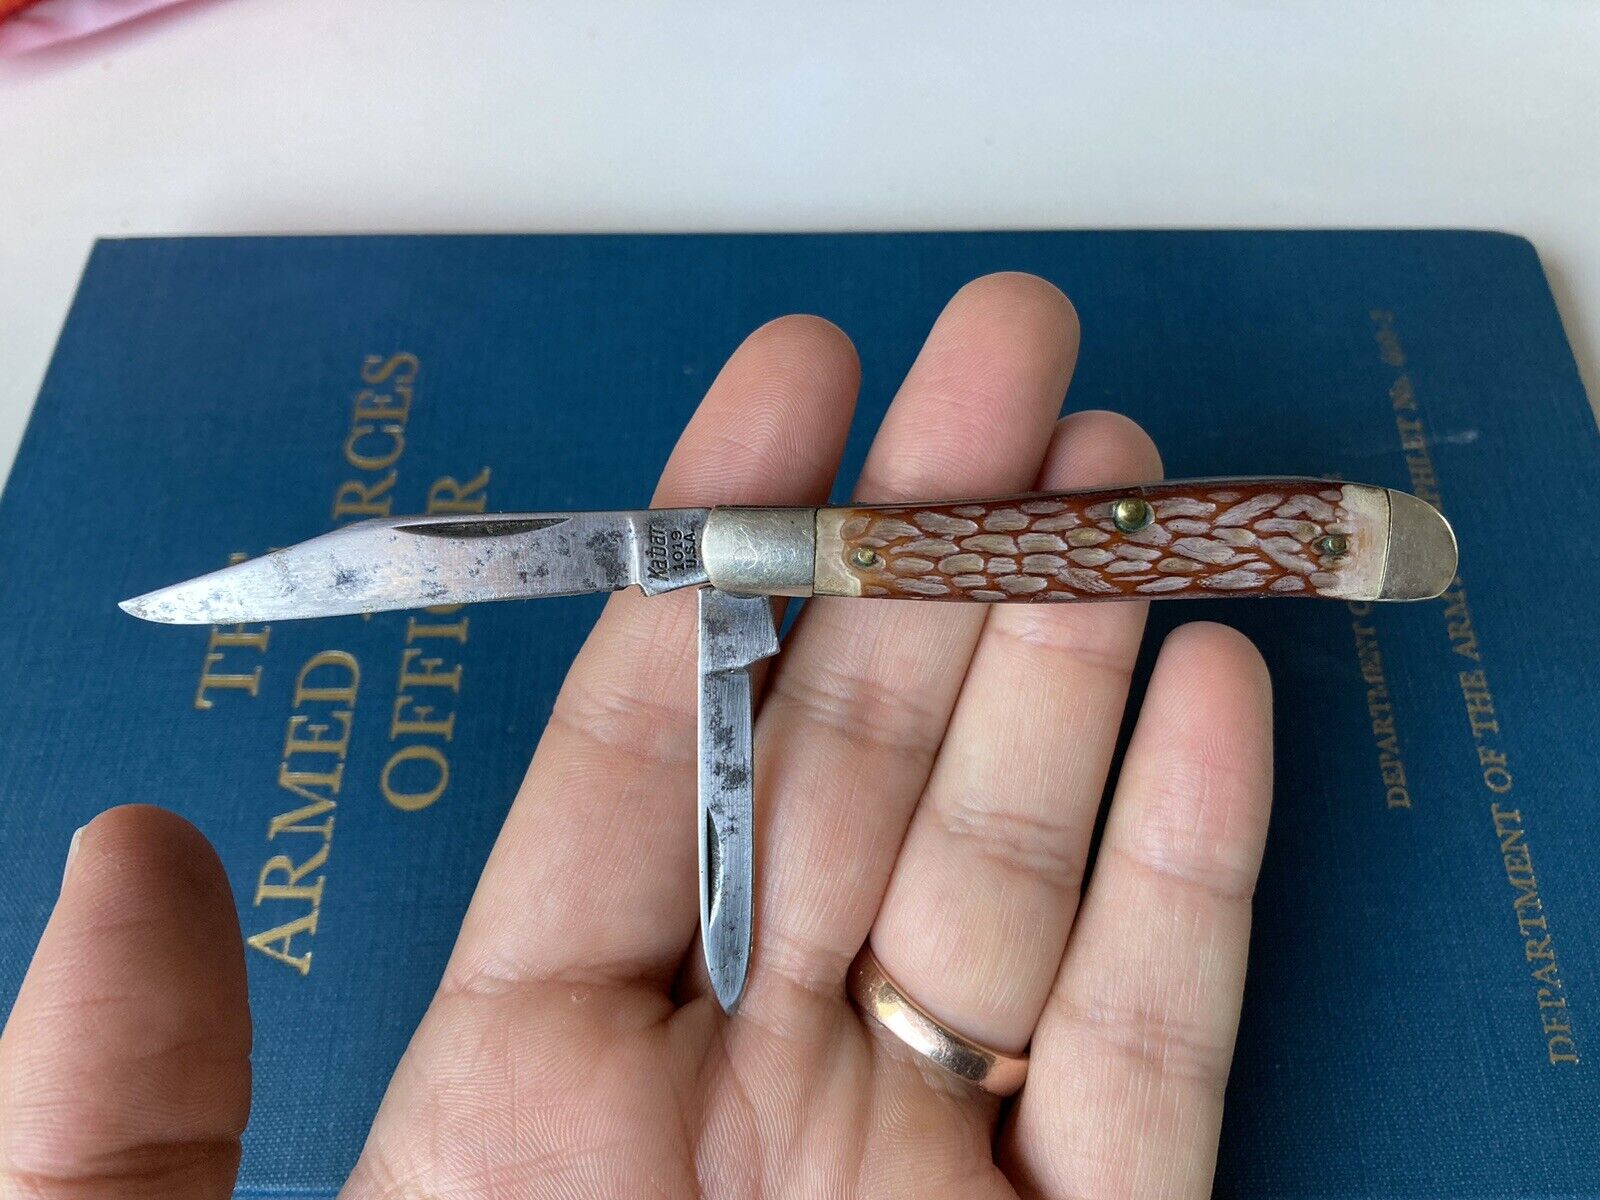 Vintage Kabar 1019 Pocket Knife 2 Blade Made In USA Antique